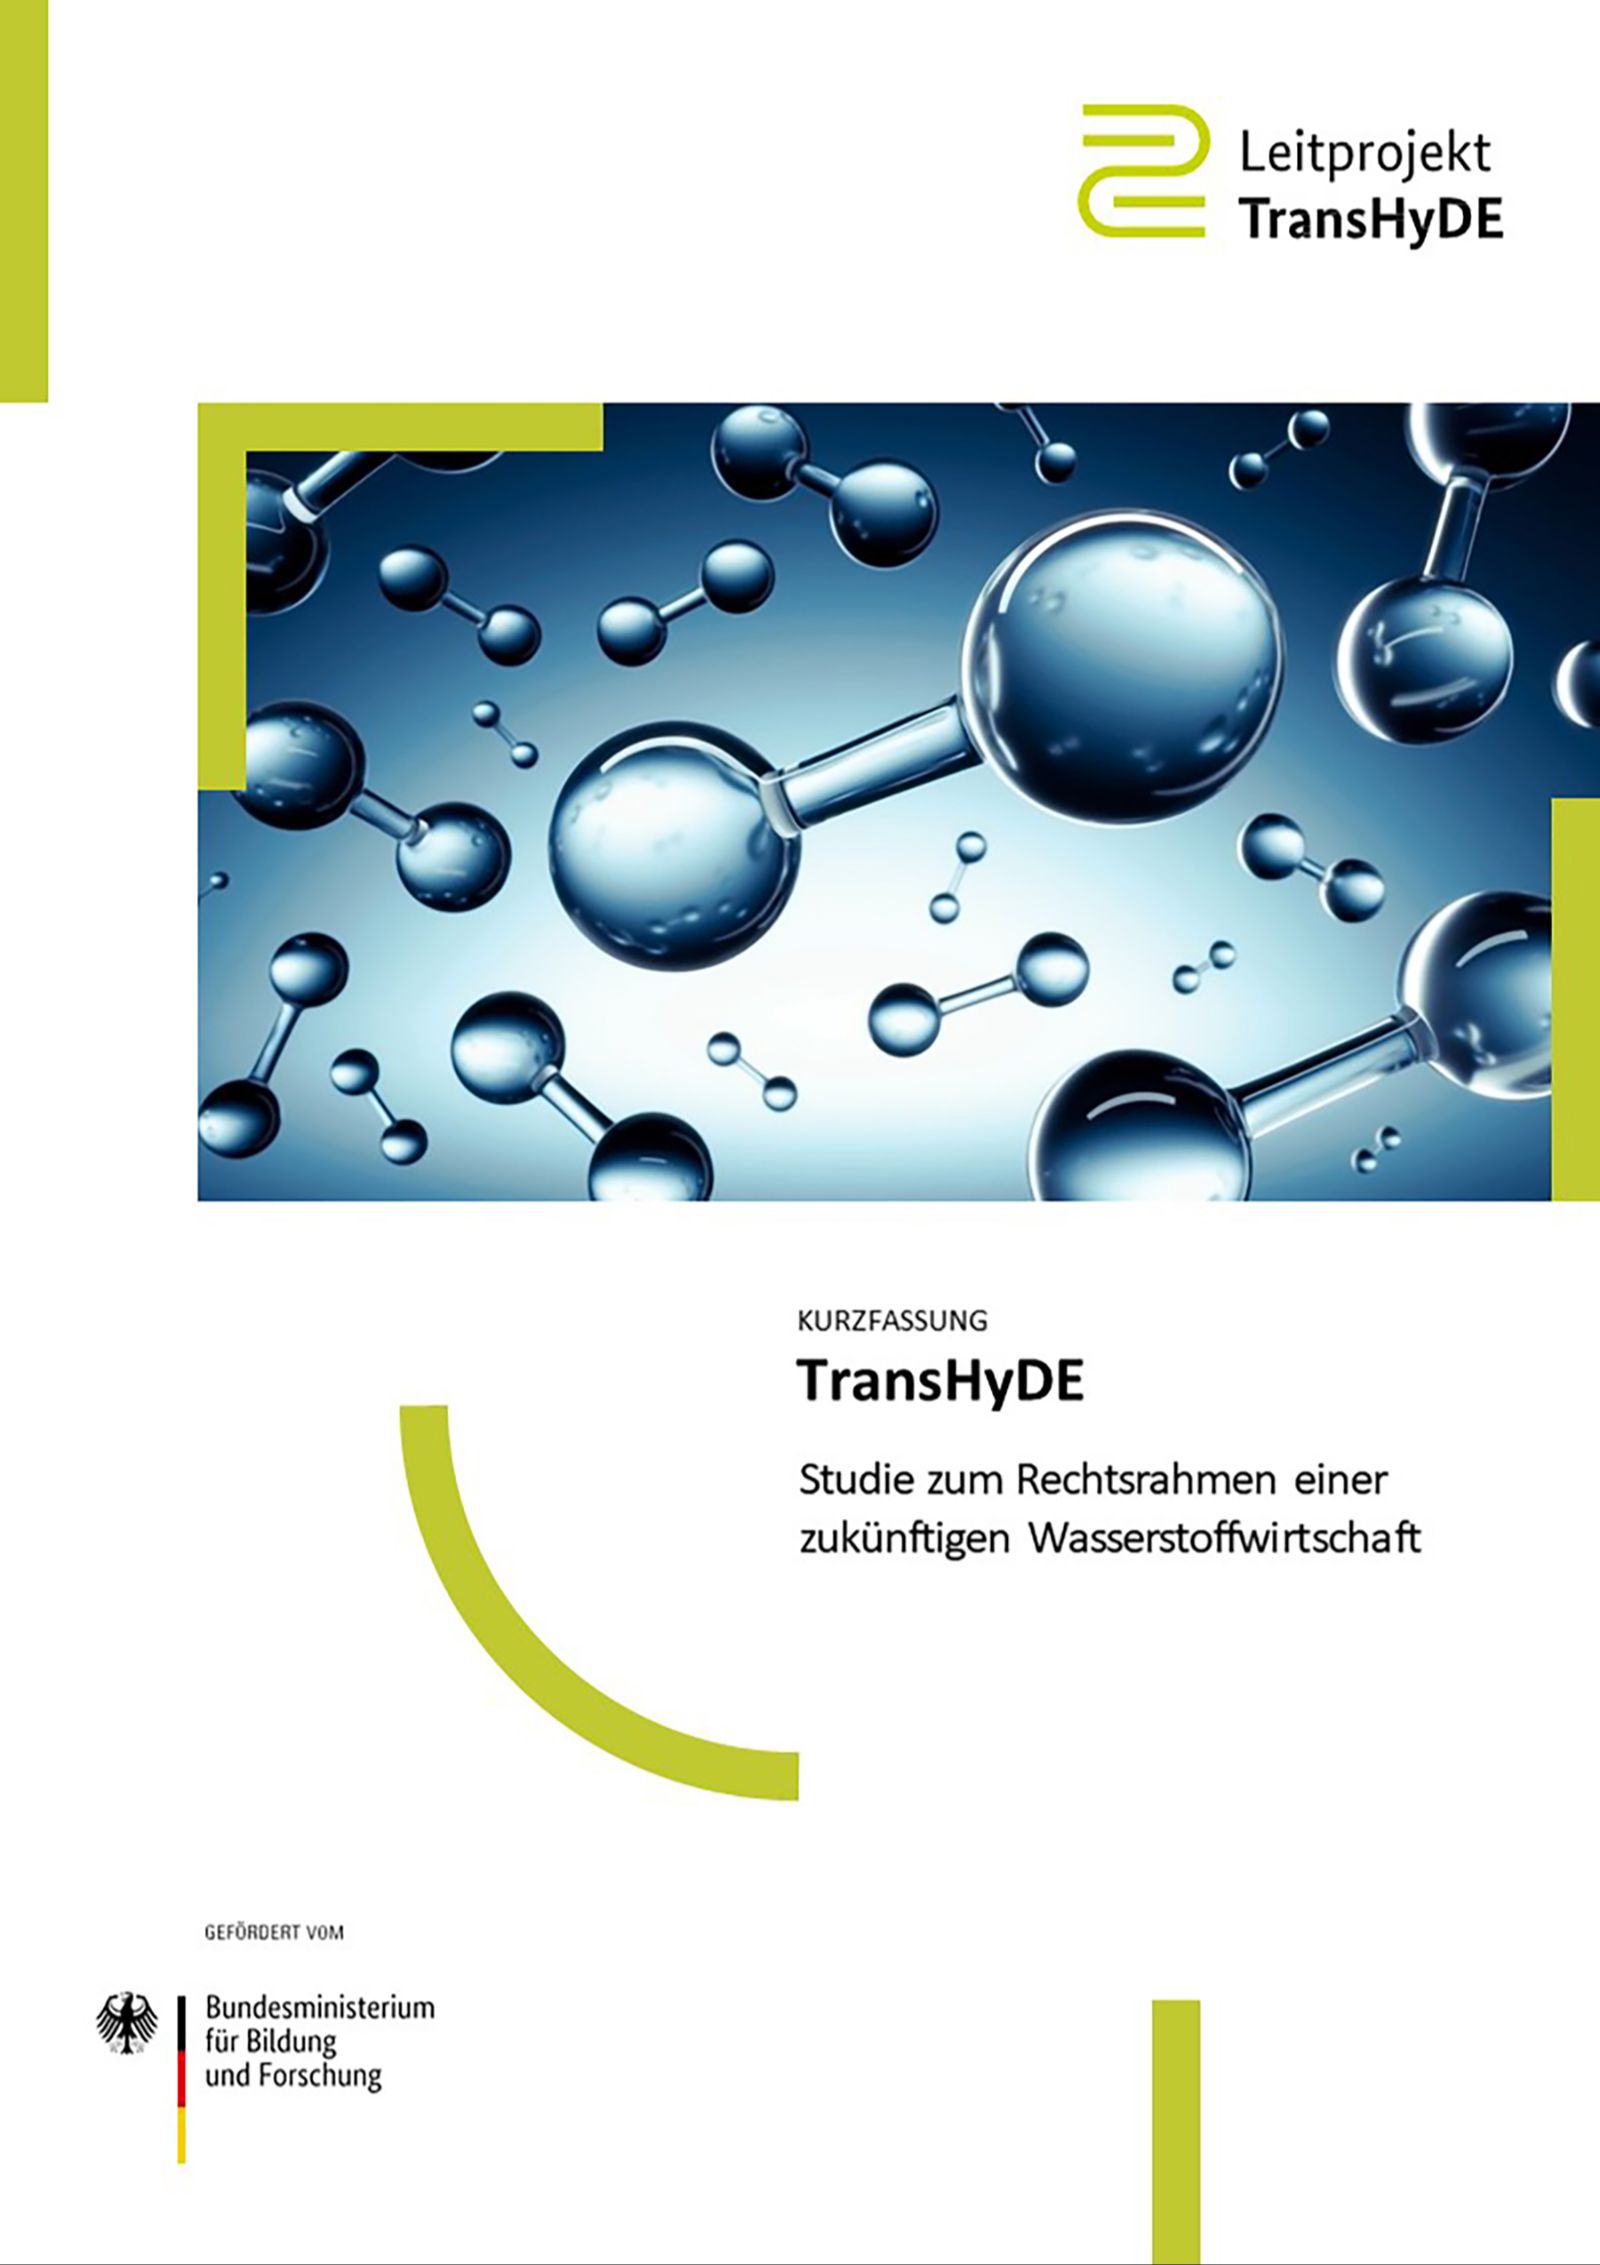 Das Bild zeigt das Titelblatt der TransHyDE-Studie zum Rechtsrahmen einer zukünftigen Wasserstoffwirtschaft.